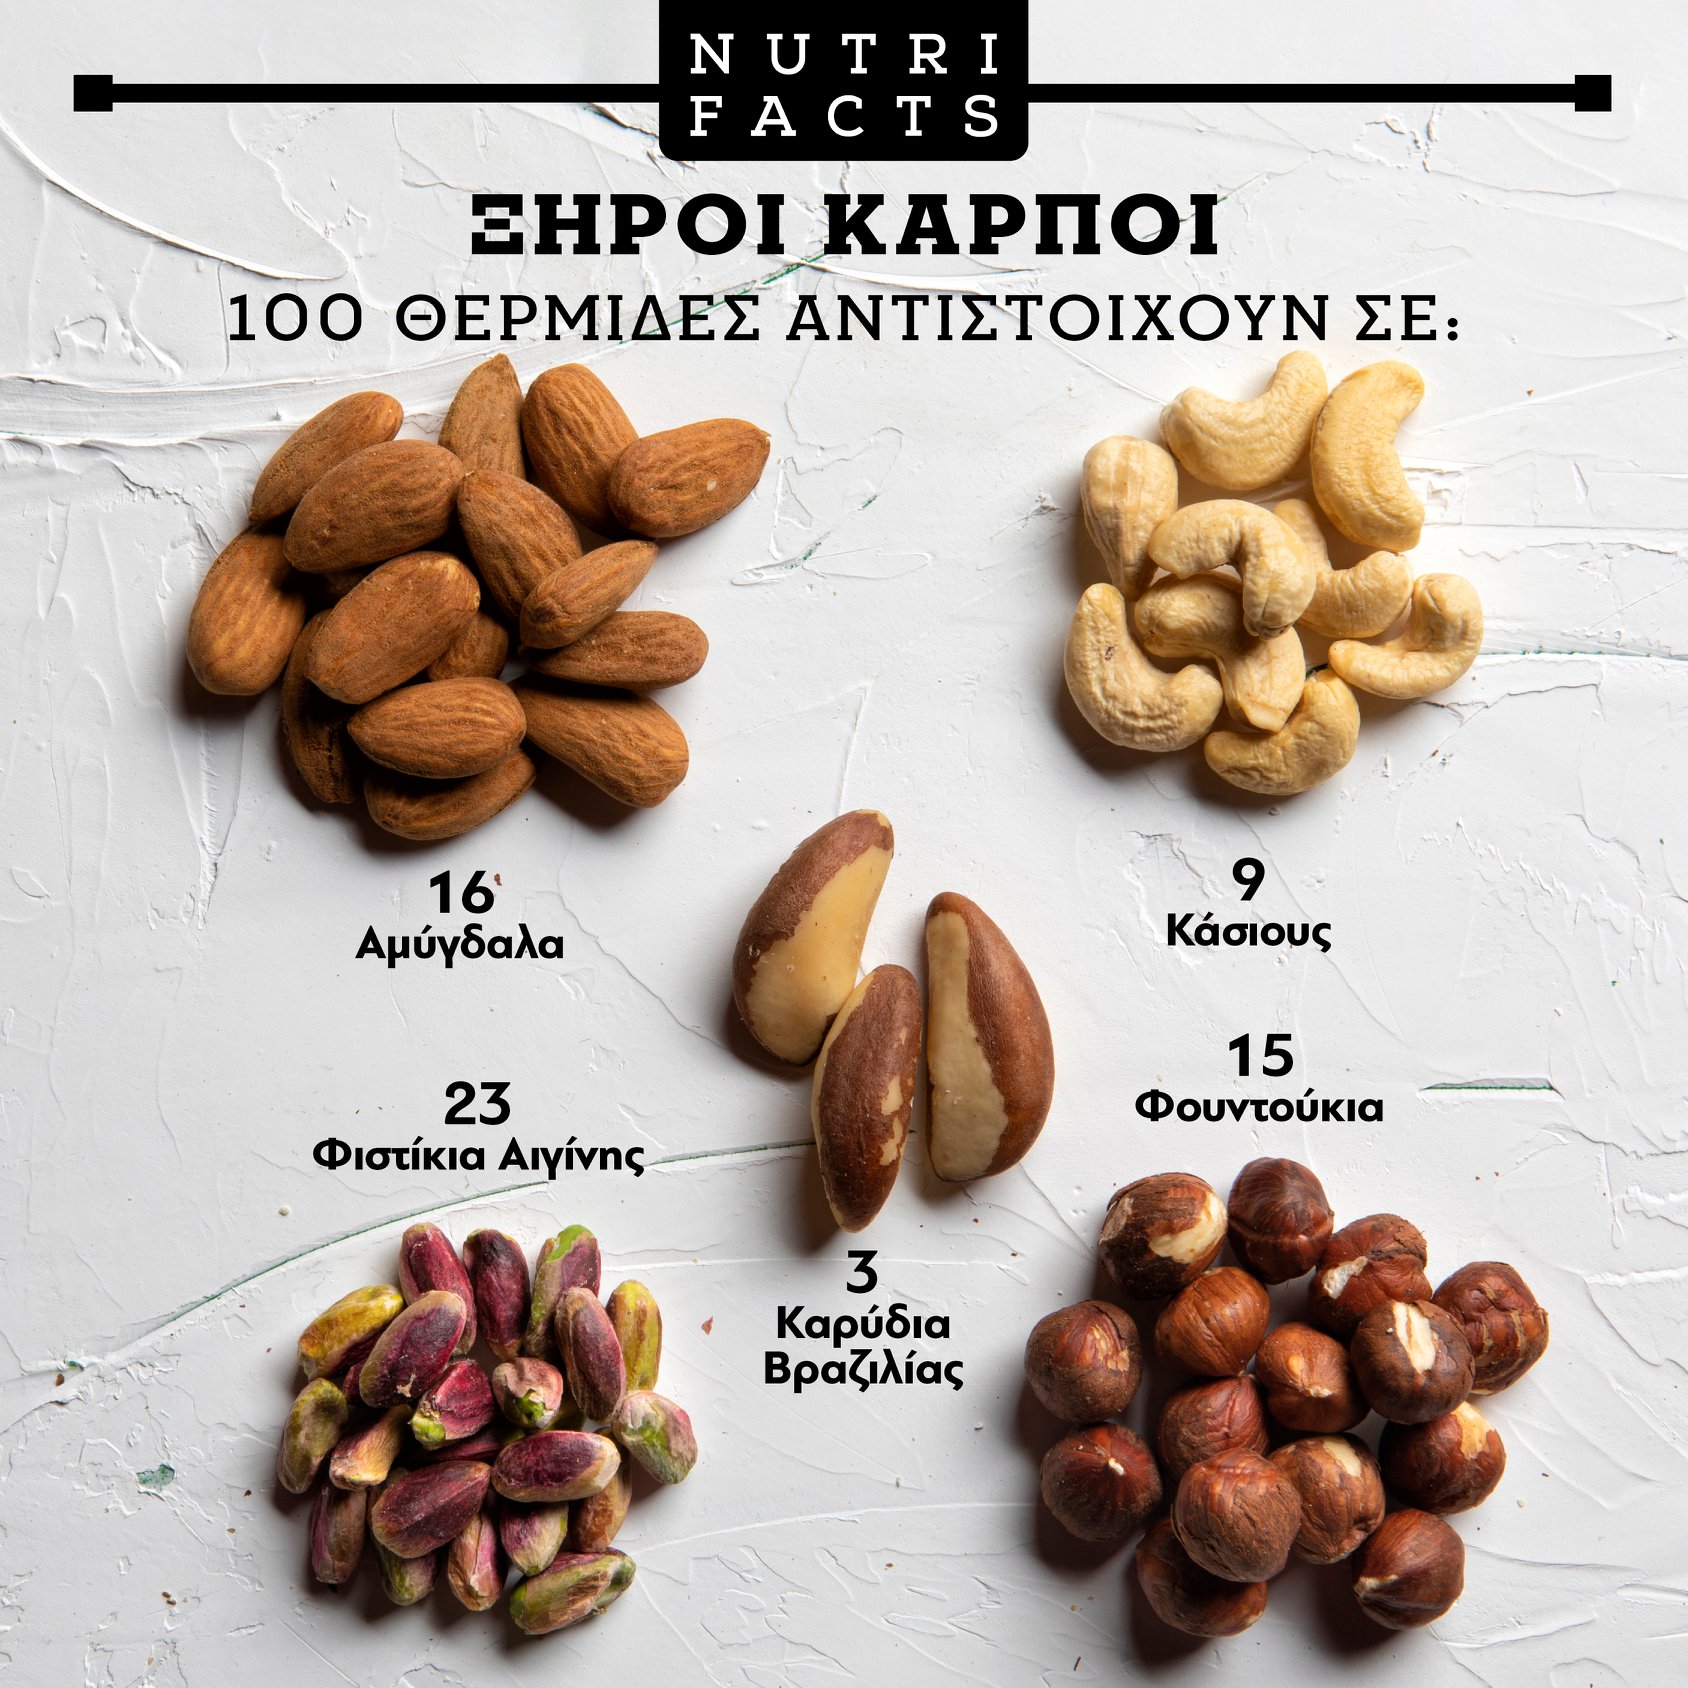 Άκης Πετρετζίκης: Αυτή η ποσότητα ξηρών καρπών αναλογεί σε 100 θερμίδες για κάθε ένα είδος! (εικόνα)